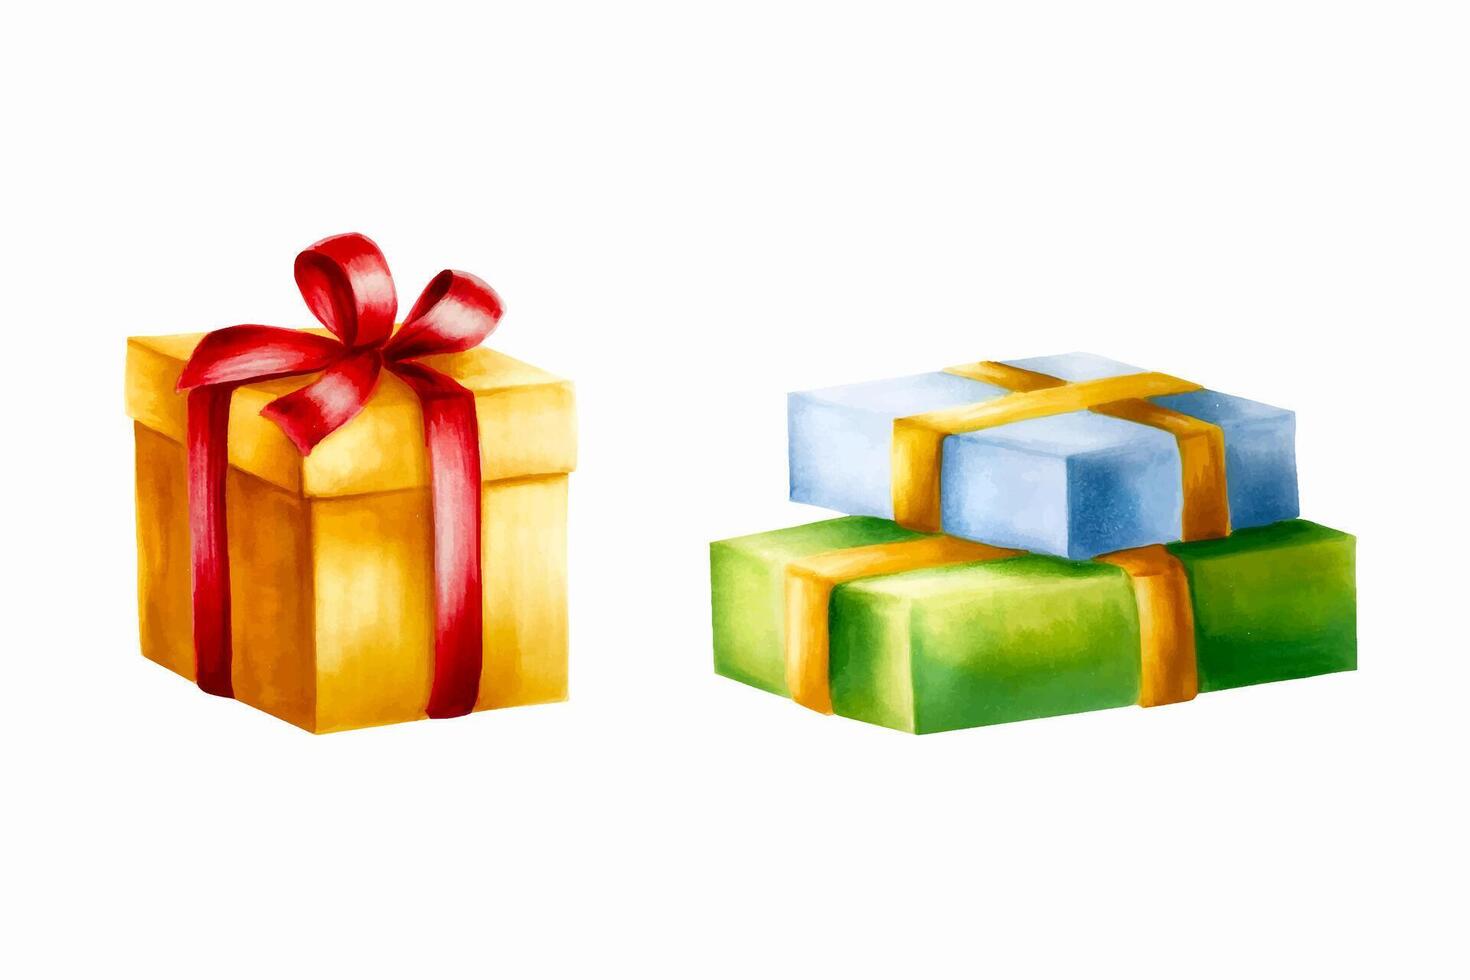 Aquarell einstellen von Weihnachten Geschenke Illustration. Neu Jahr Gold Geschenk Box mit rot Bogen und Geschenk Kisten mit Gold verbeugt sich isoliert auf Weiß Hintergrund. zum Designer, Dekoration, Geschäft, zum postc vektor